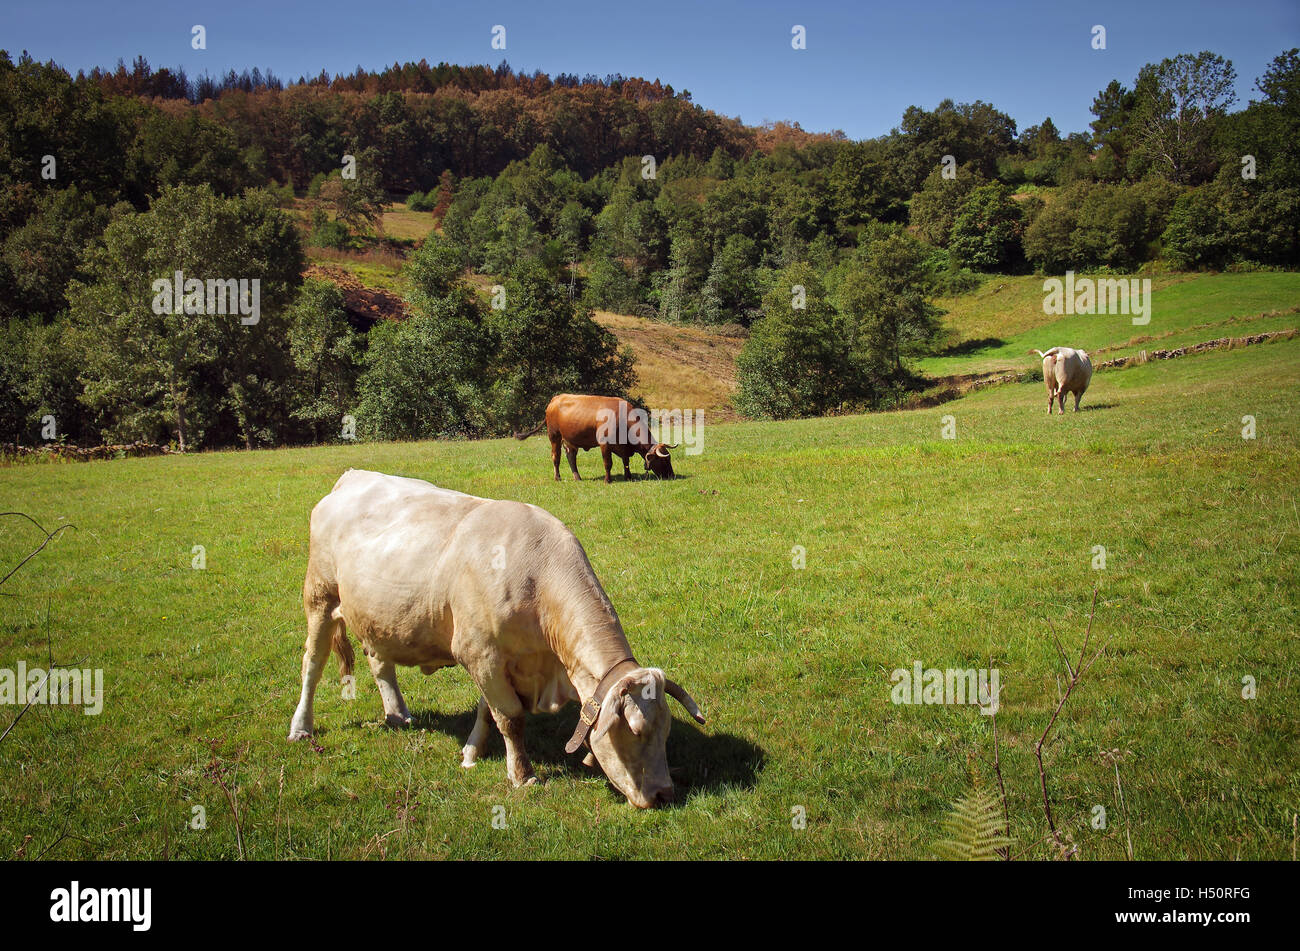 Paesaggio di campagna con bovini che pascolano in un campo verde Foto Stock